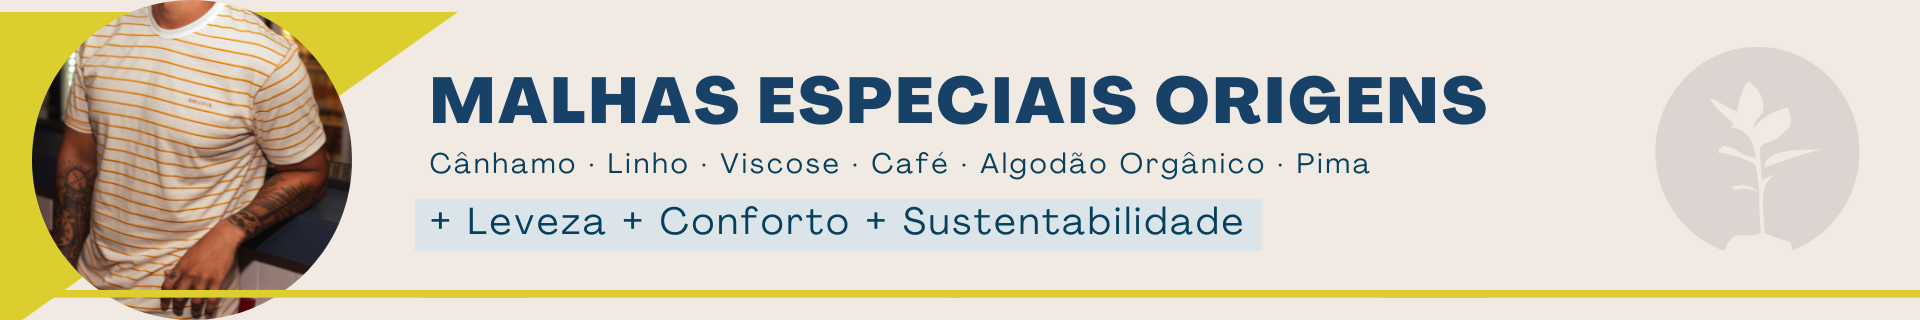 Malhas especiais em Cânhamo, Linho, Café, Viscose, Algodão Orgânico, Pima. Estilo, Conforto e Sustentabilidade.